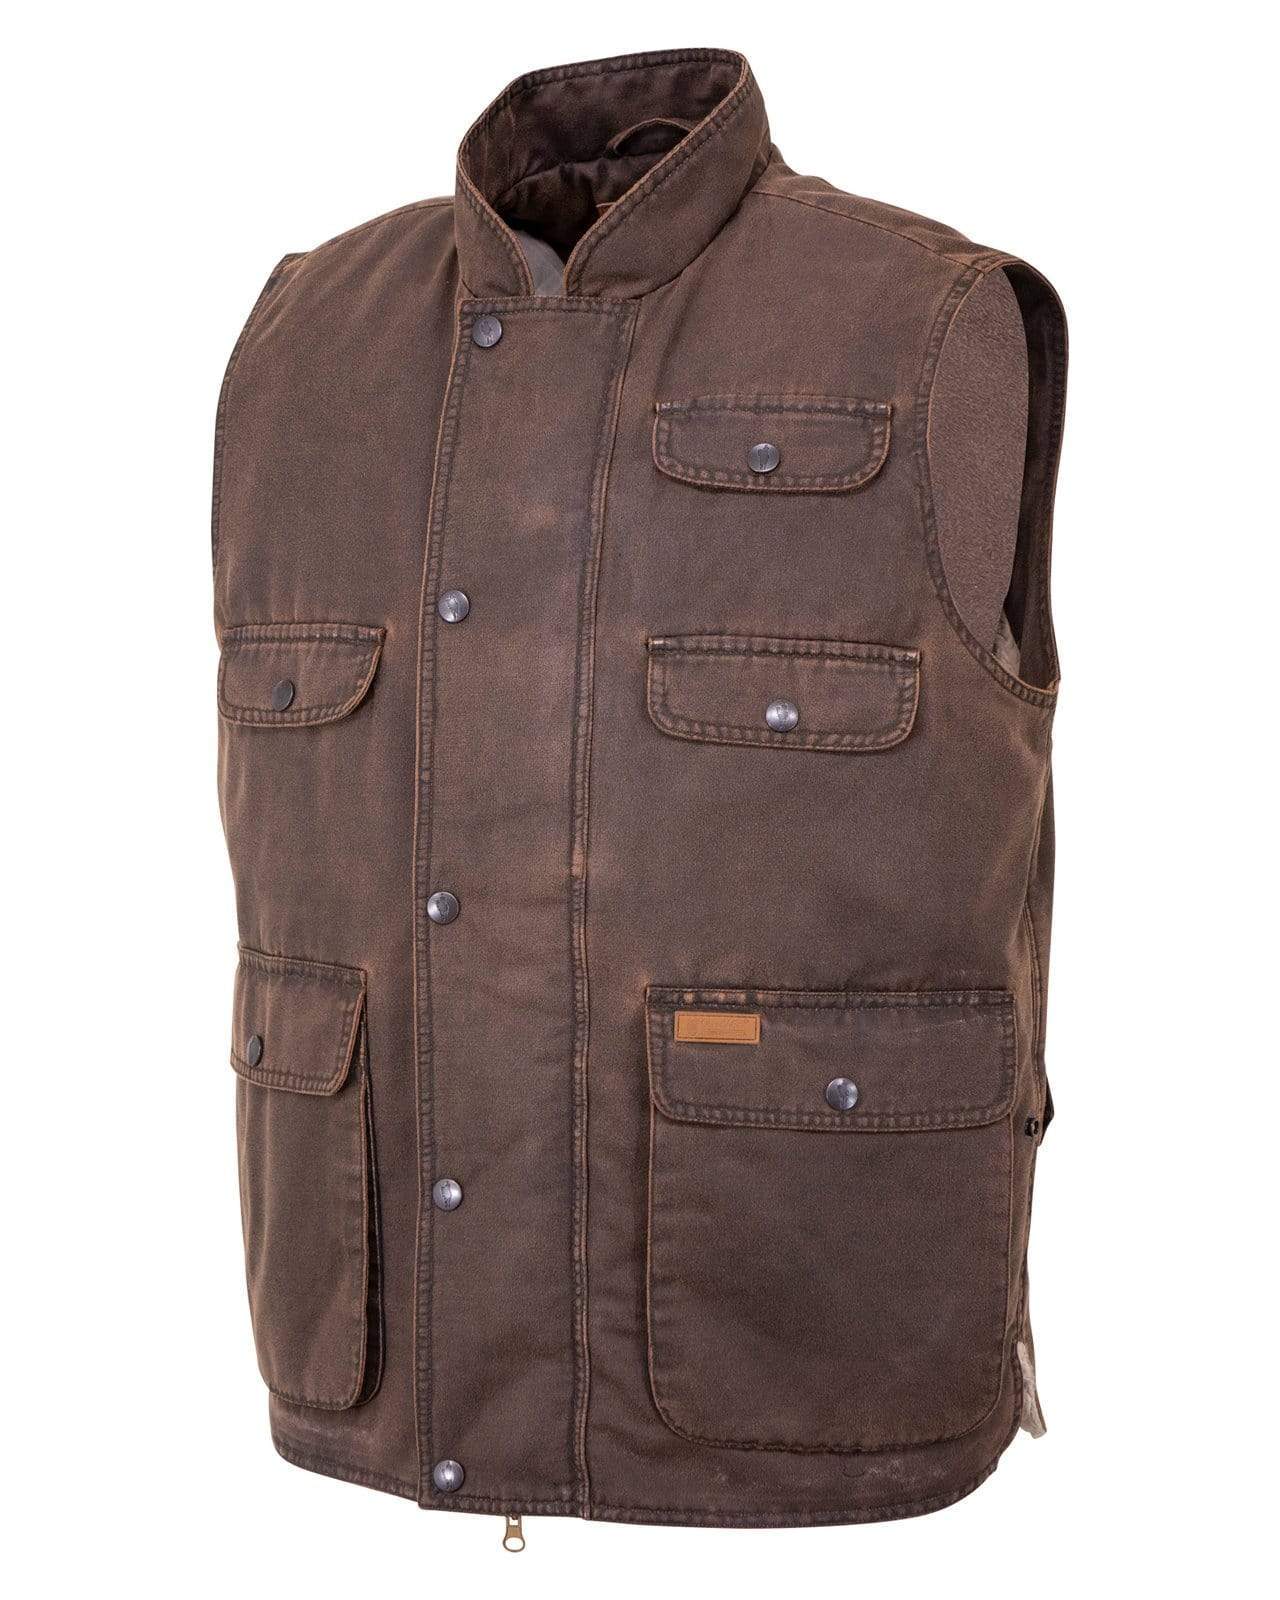 Outback Trading Company Men’s Cobar Vest Vests